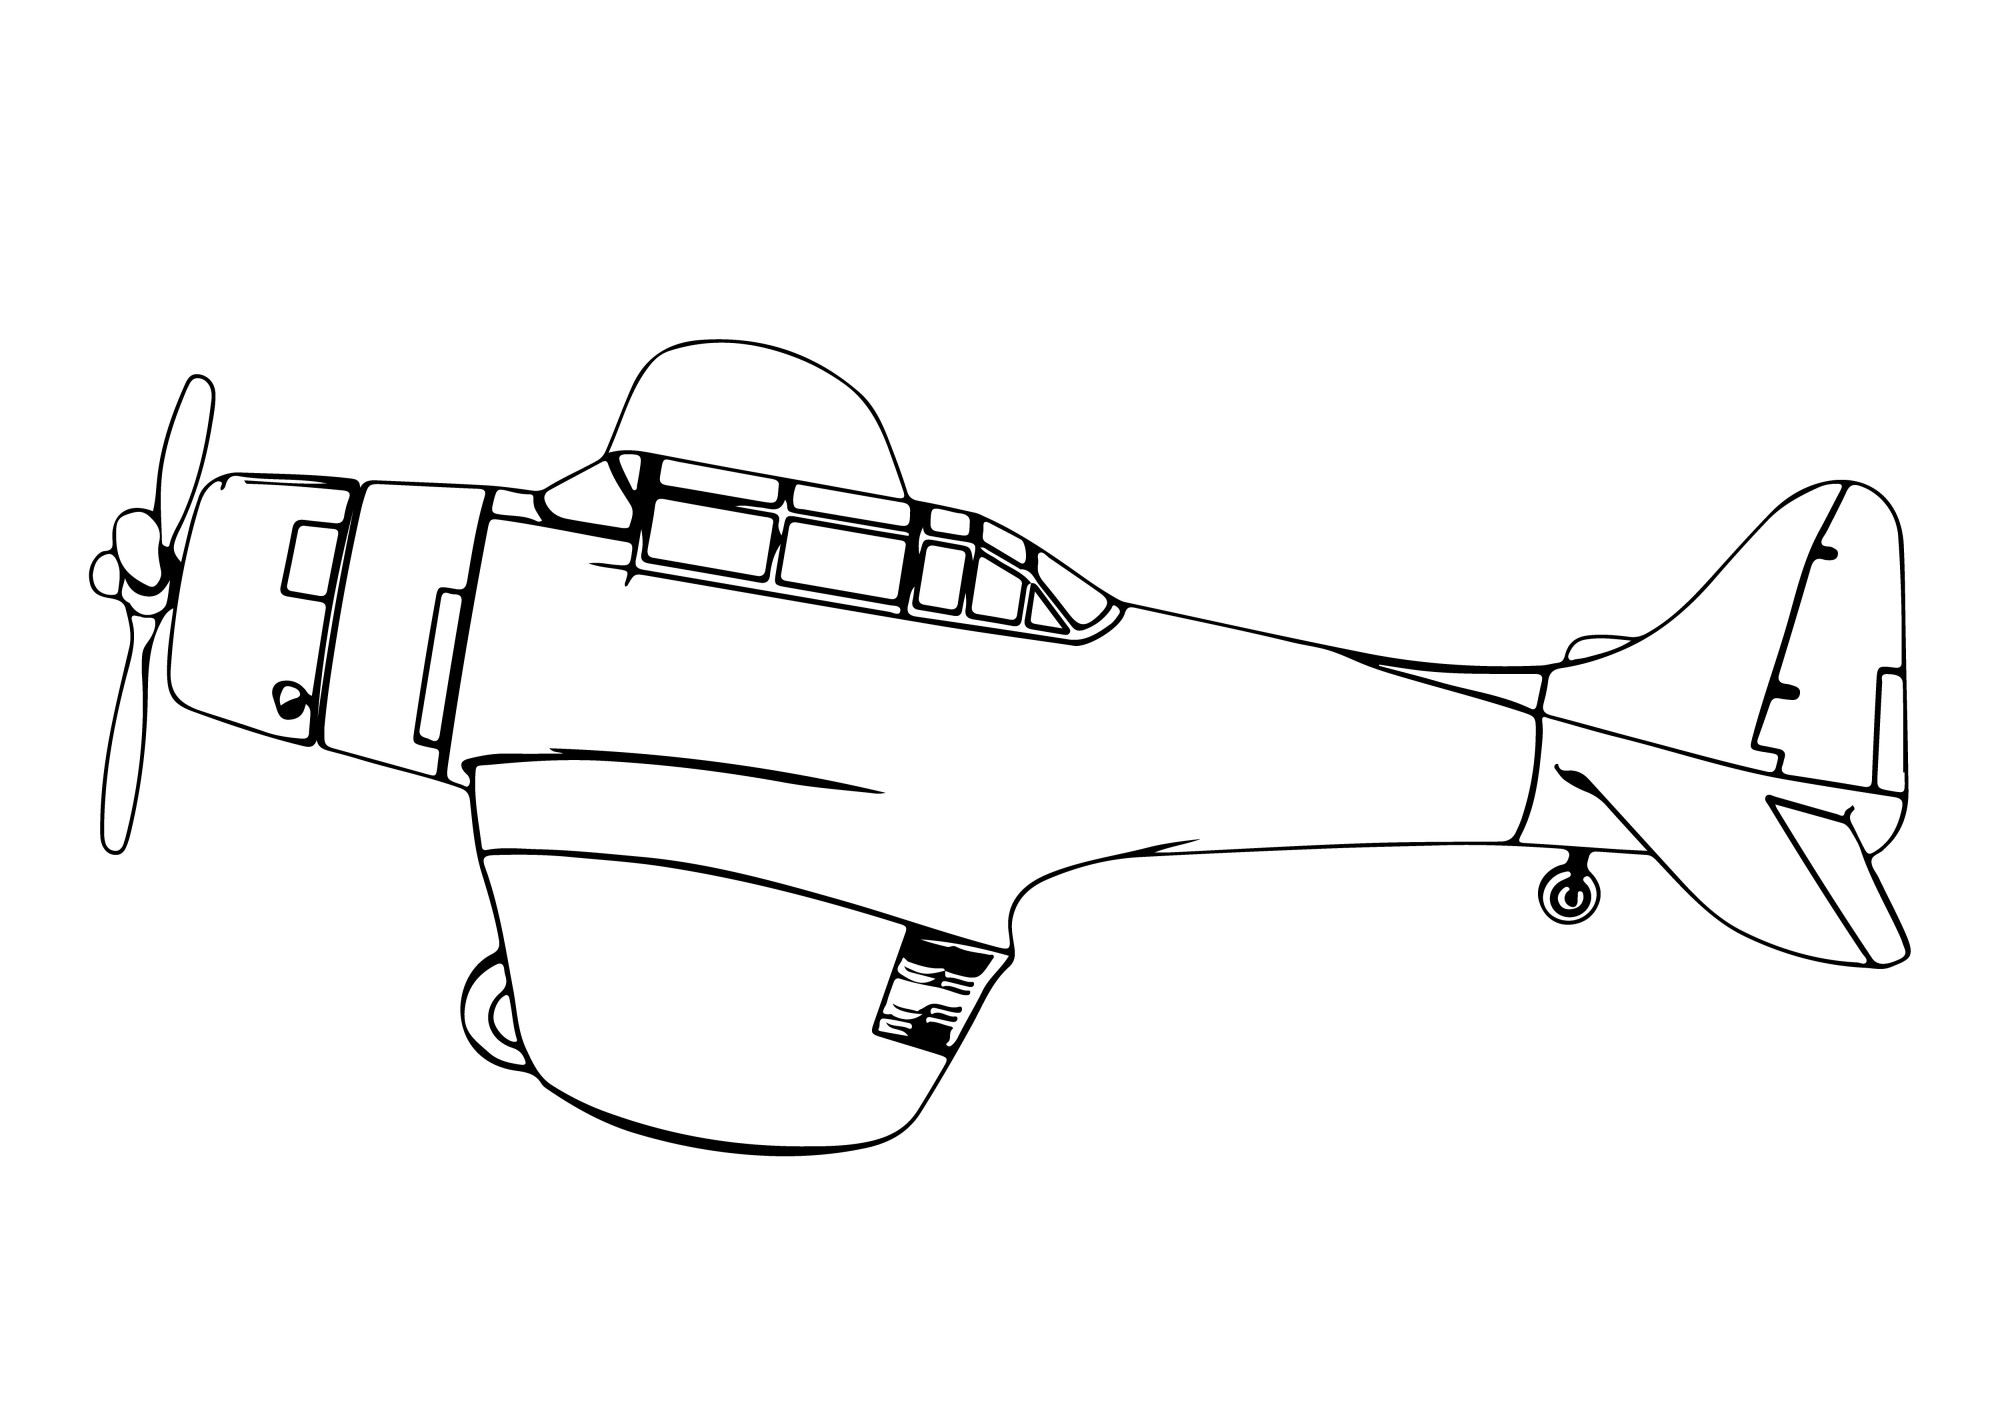 Раскраска для детей: самолет «Крылатая сталь»